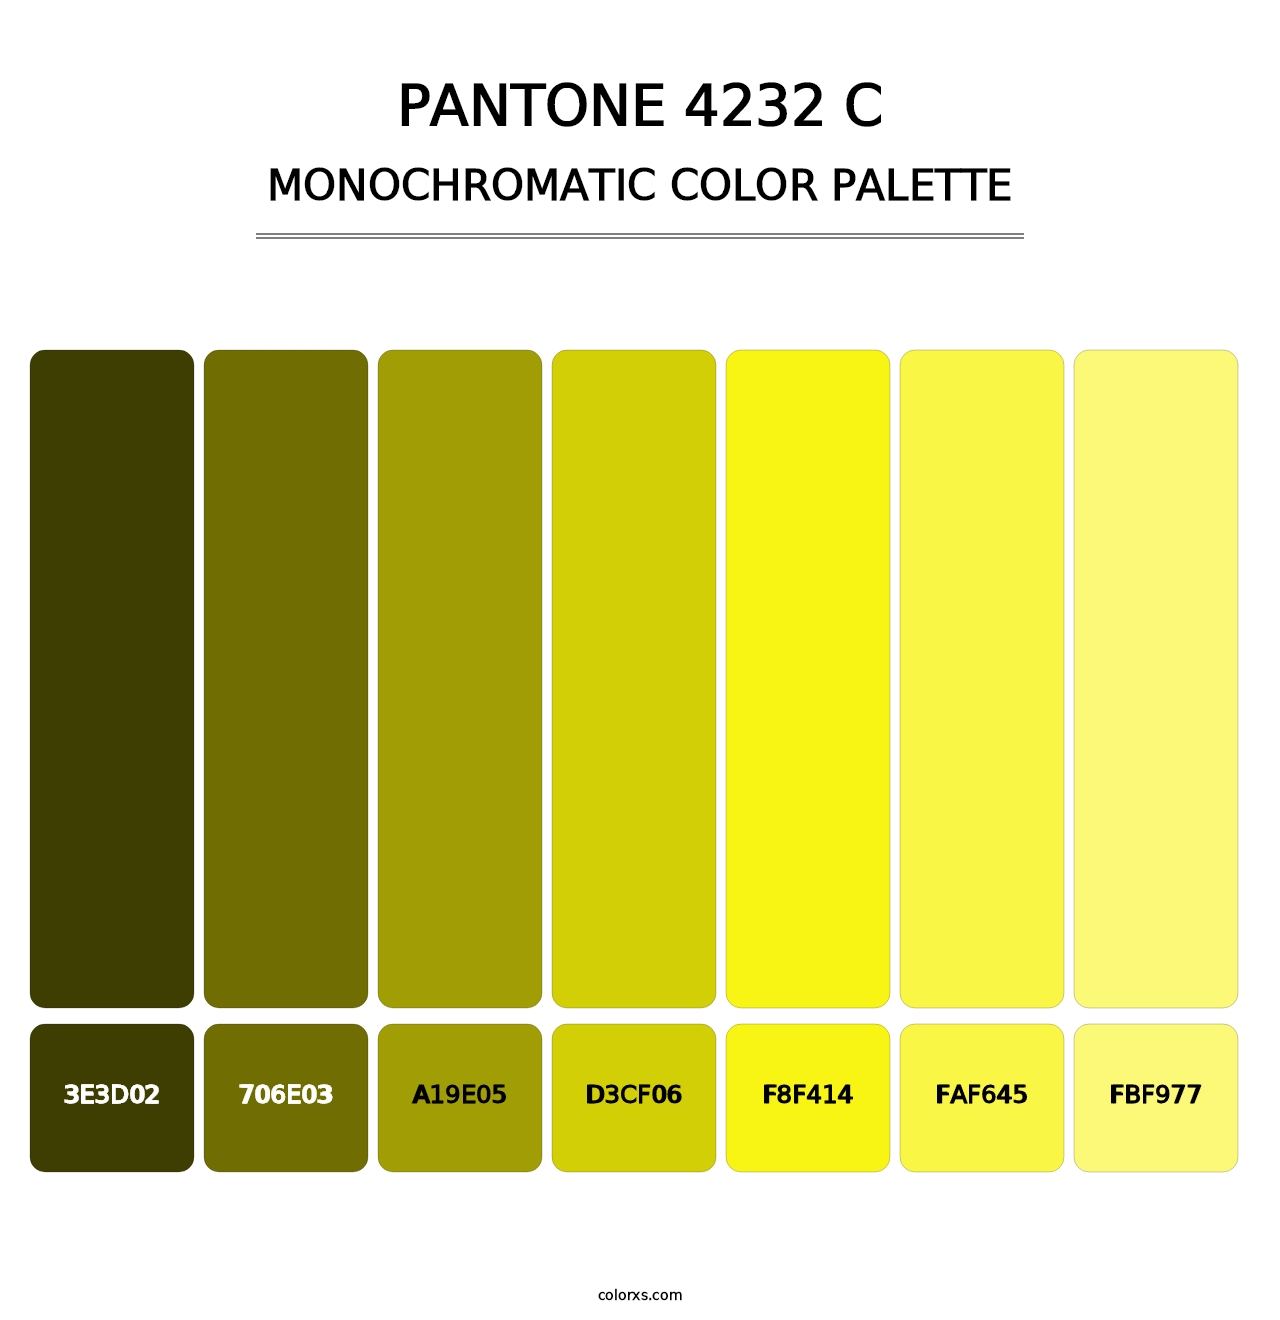 PANTONE 4232 C - Monochromatic Color Palette